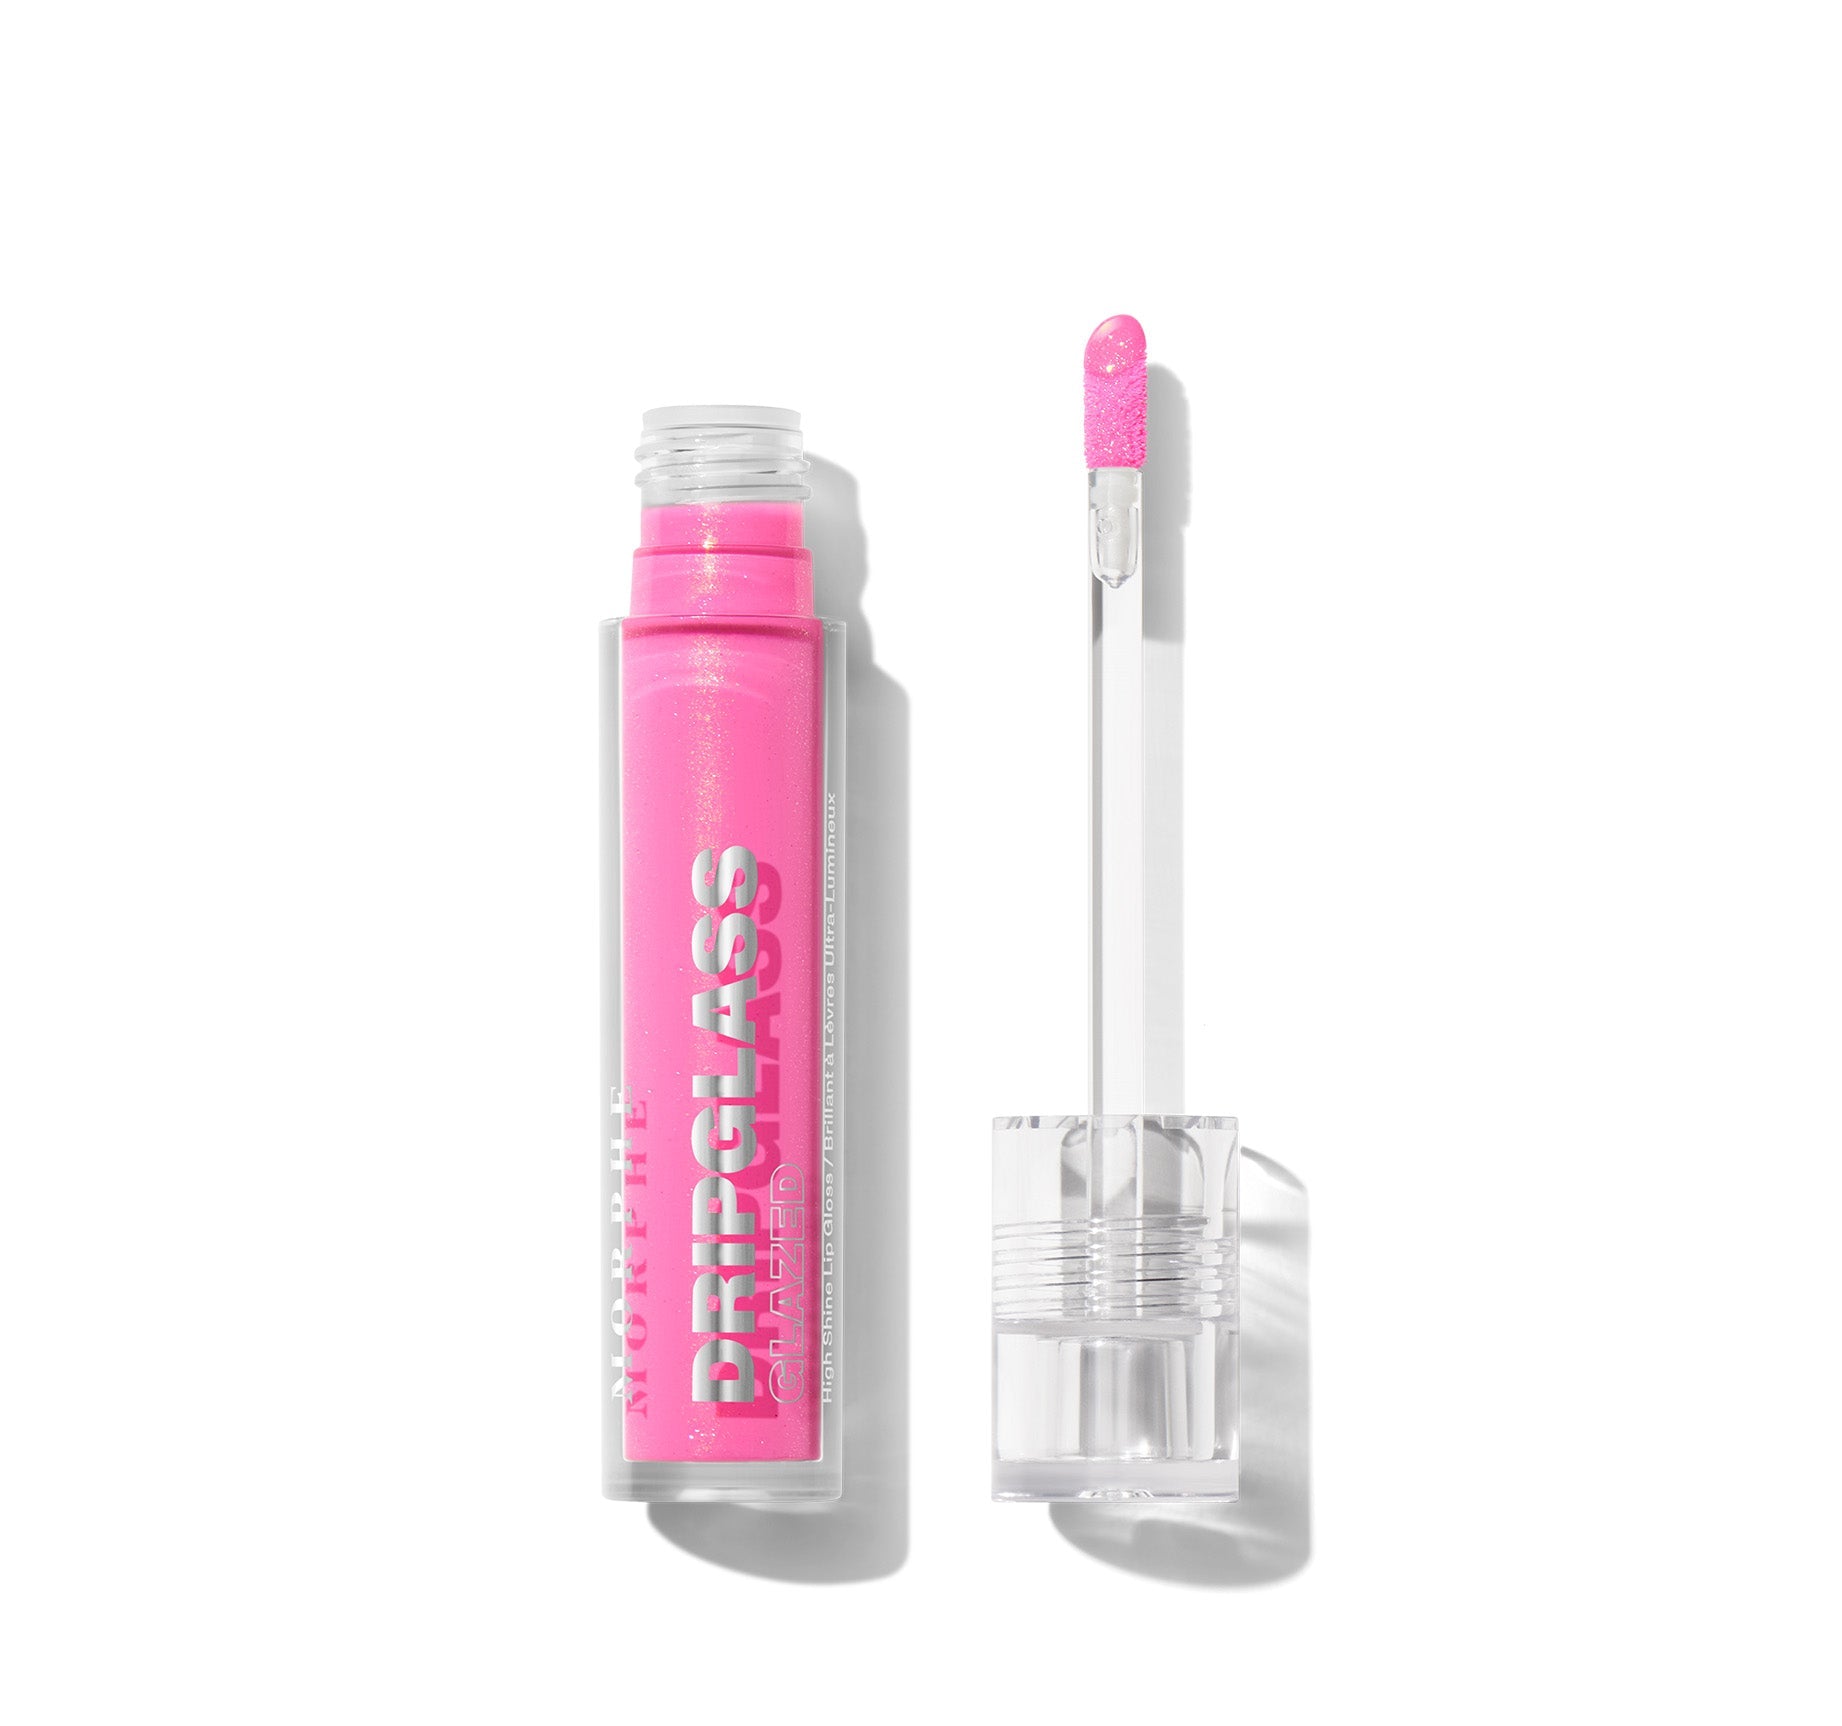 Dripglass Glazed High Shine Lip Gloss - Glint Of Pink - Image 1